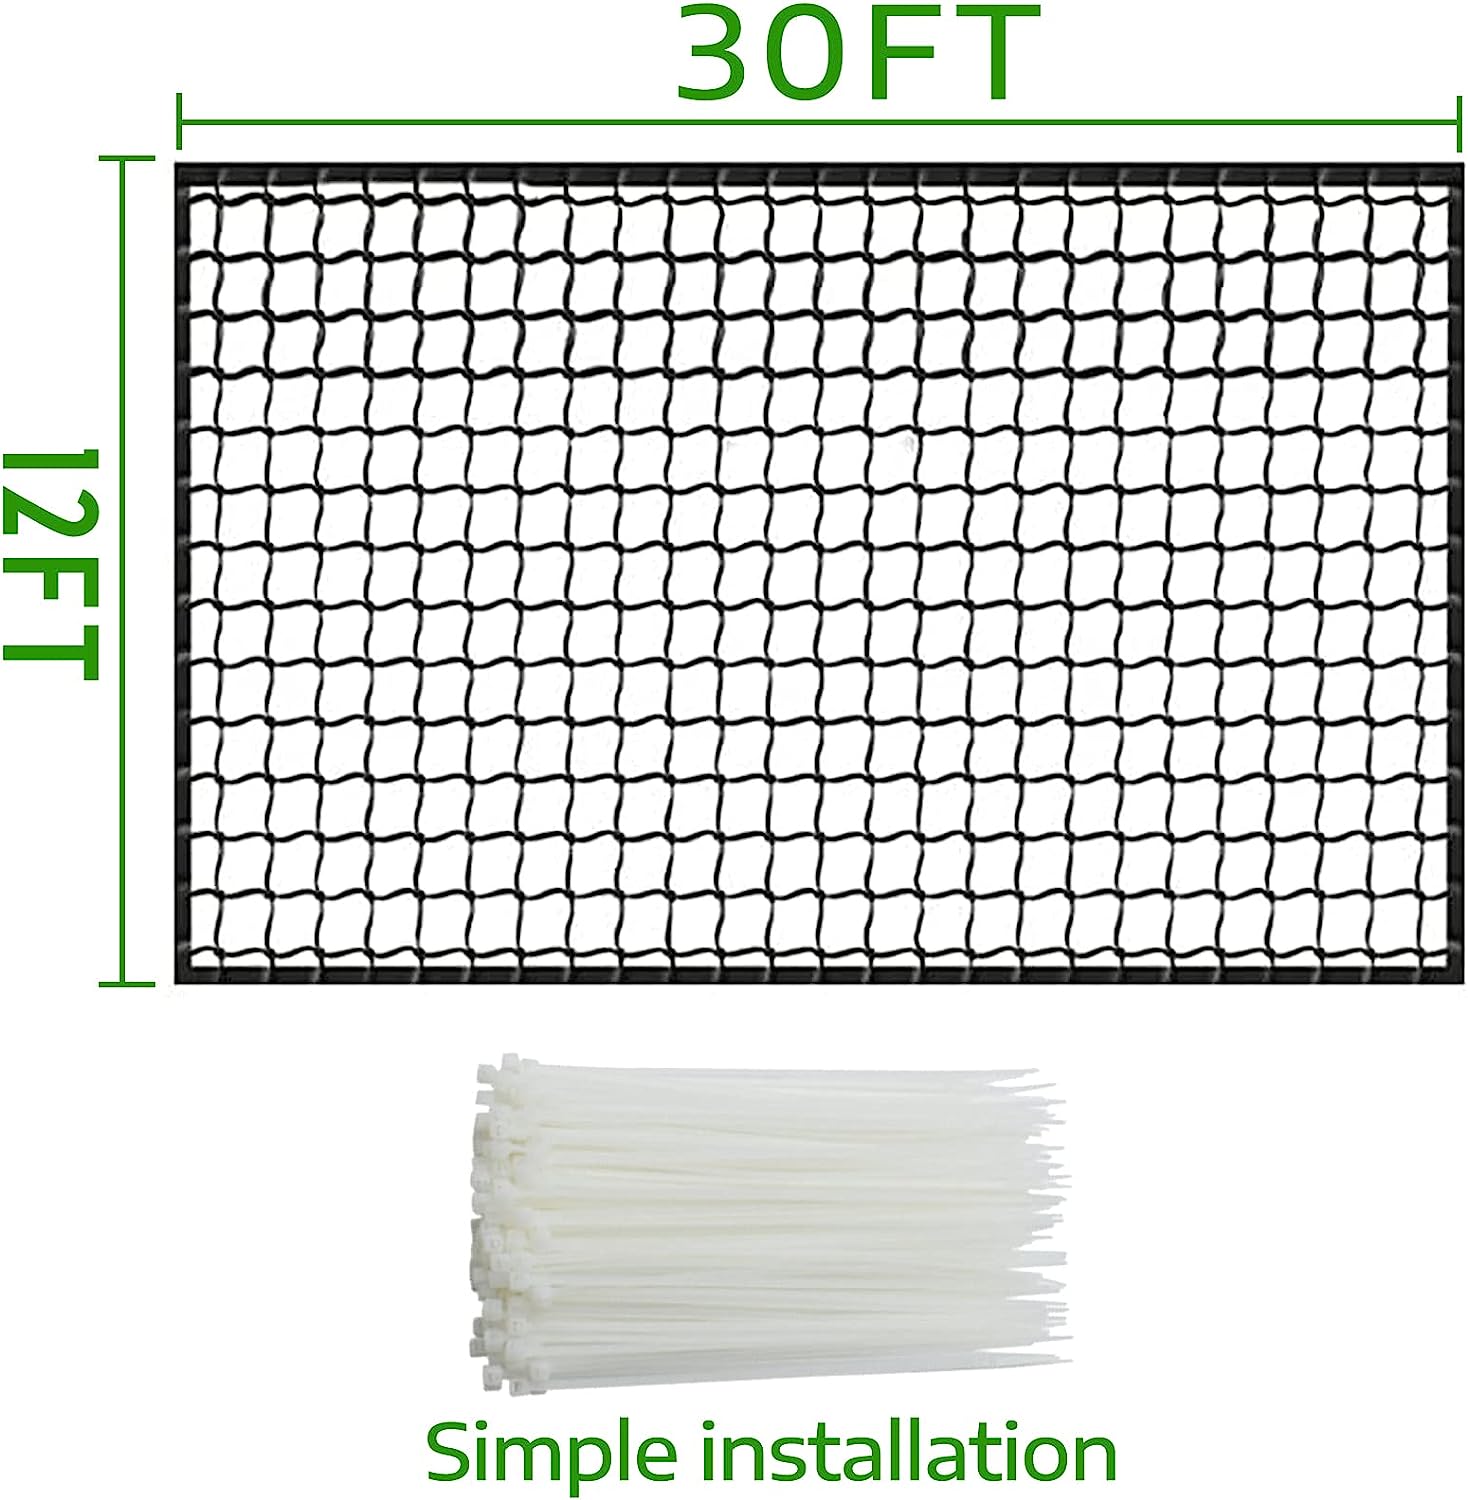 Red de jaula de bateo de béisbol 30x12/redes resistentes de barrera deportiva